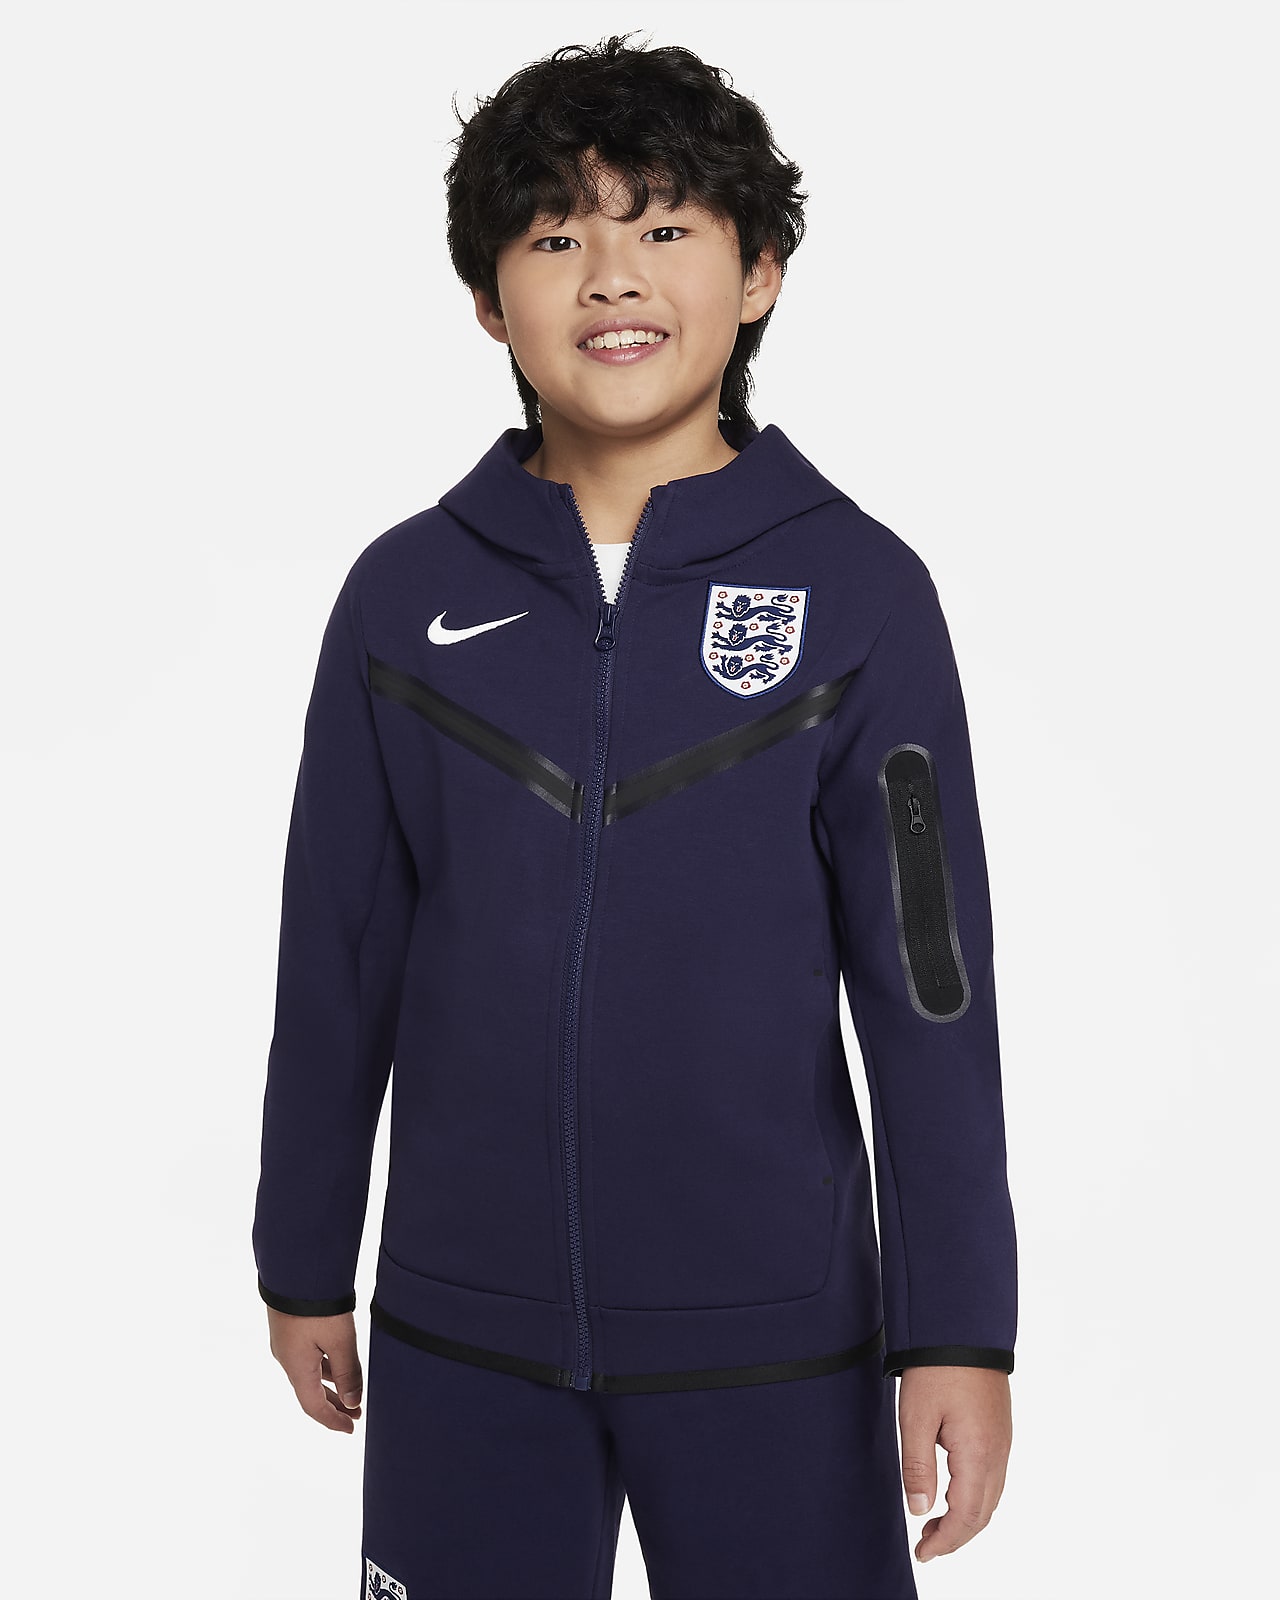 Engeland Tech Fleece Nike voetbalhoodie met rits over de hele lengte voor jongens